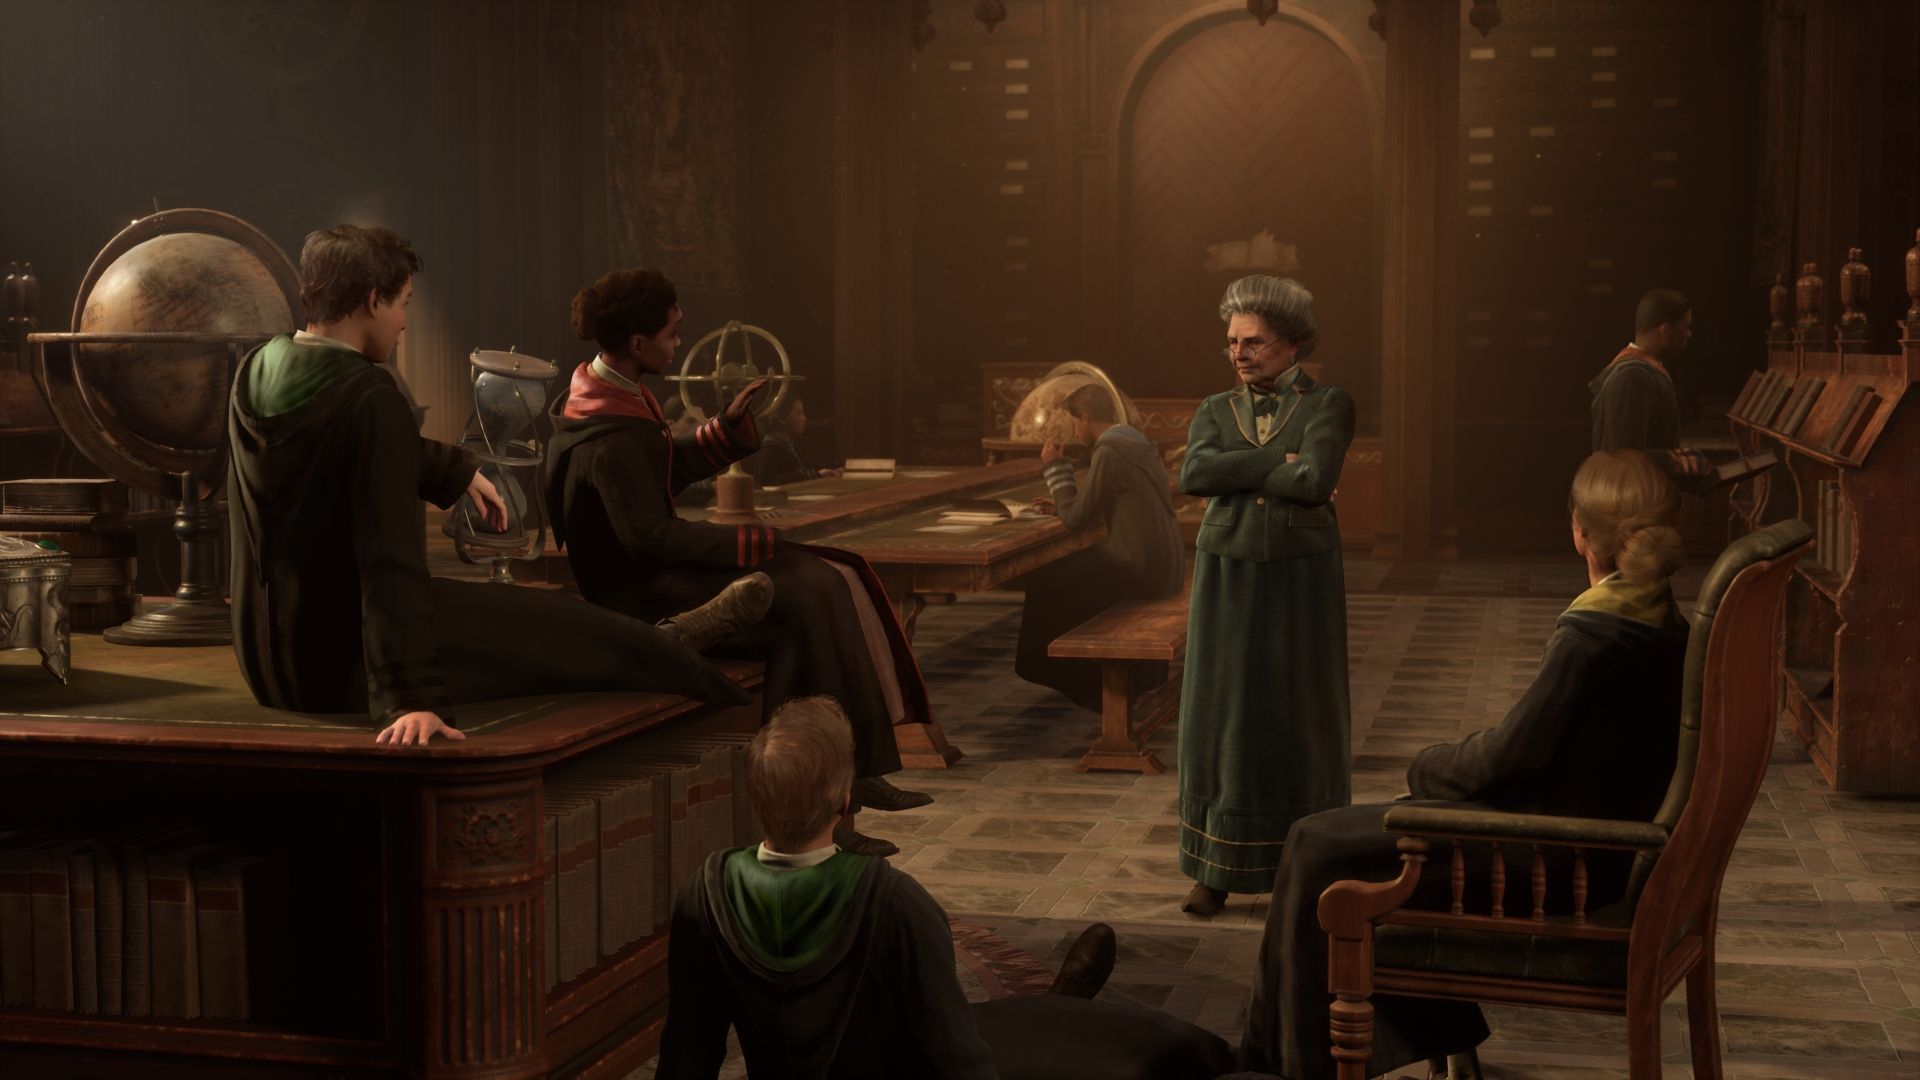 Quando esce Hogwarts Legacy per PS4 in Italia? Ecco la data